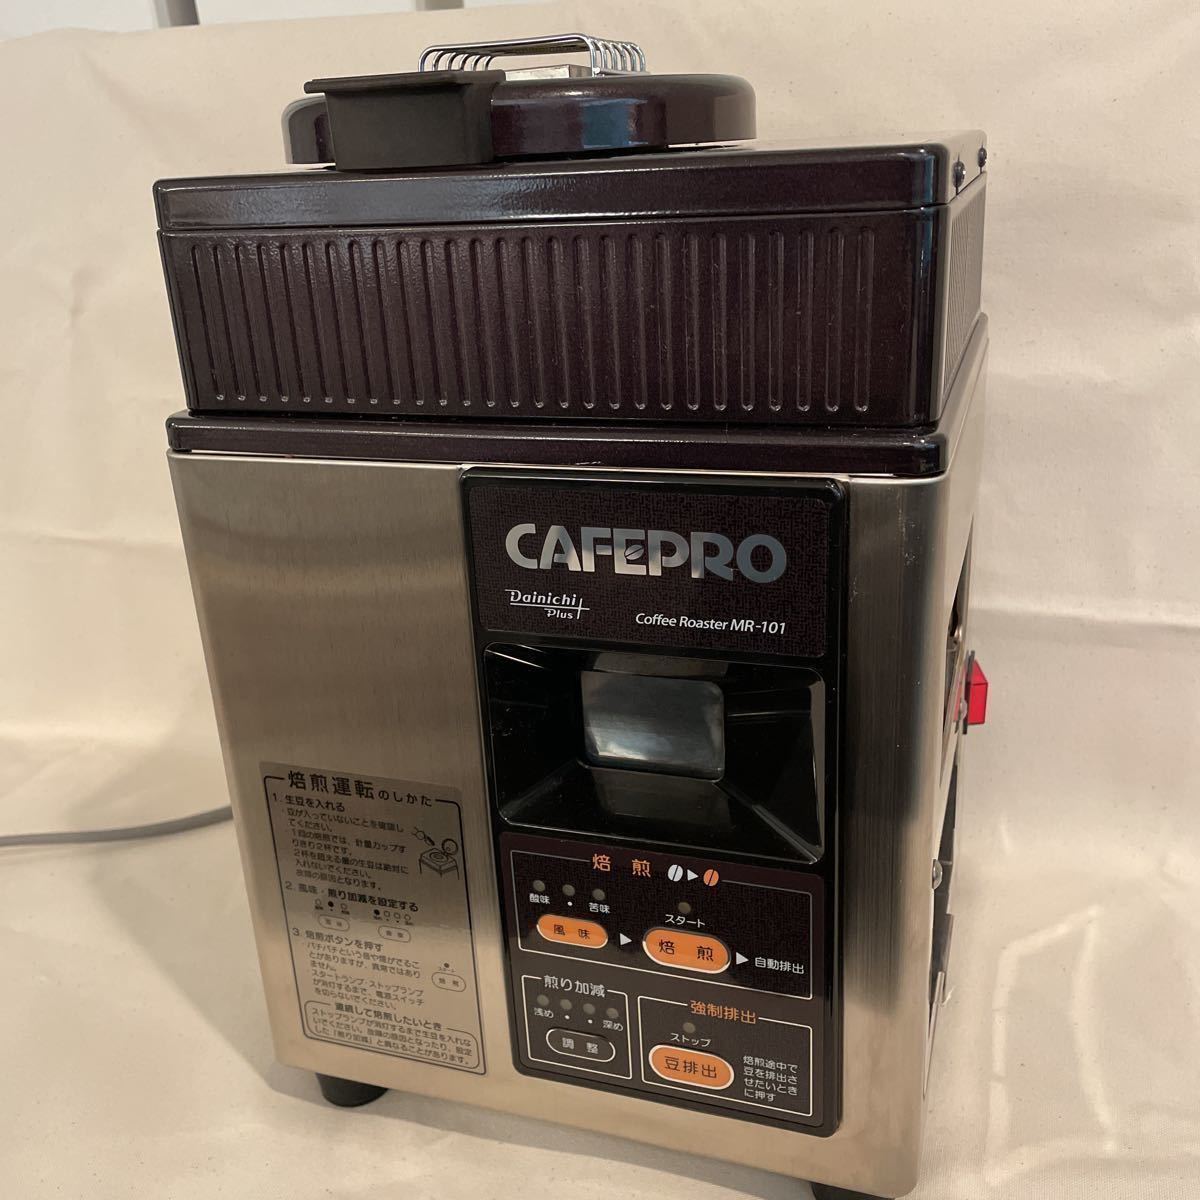 ダイニチ コーヒー豆焙煎機 カフェプロ MR-101 - JChere雅虎拍卖代购